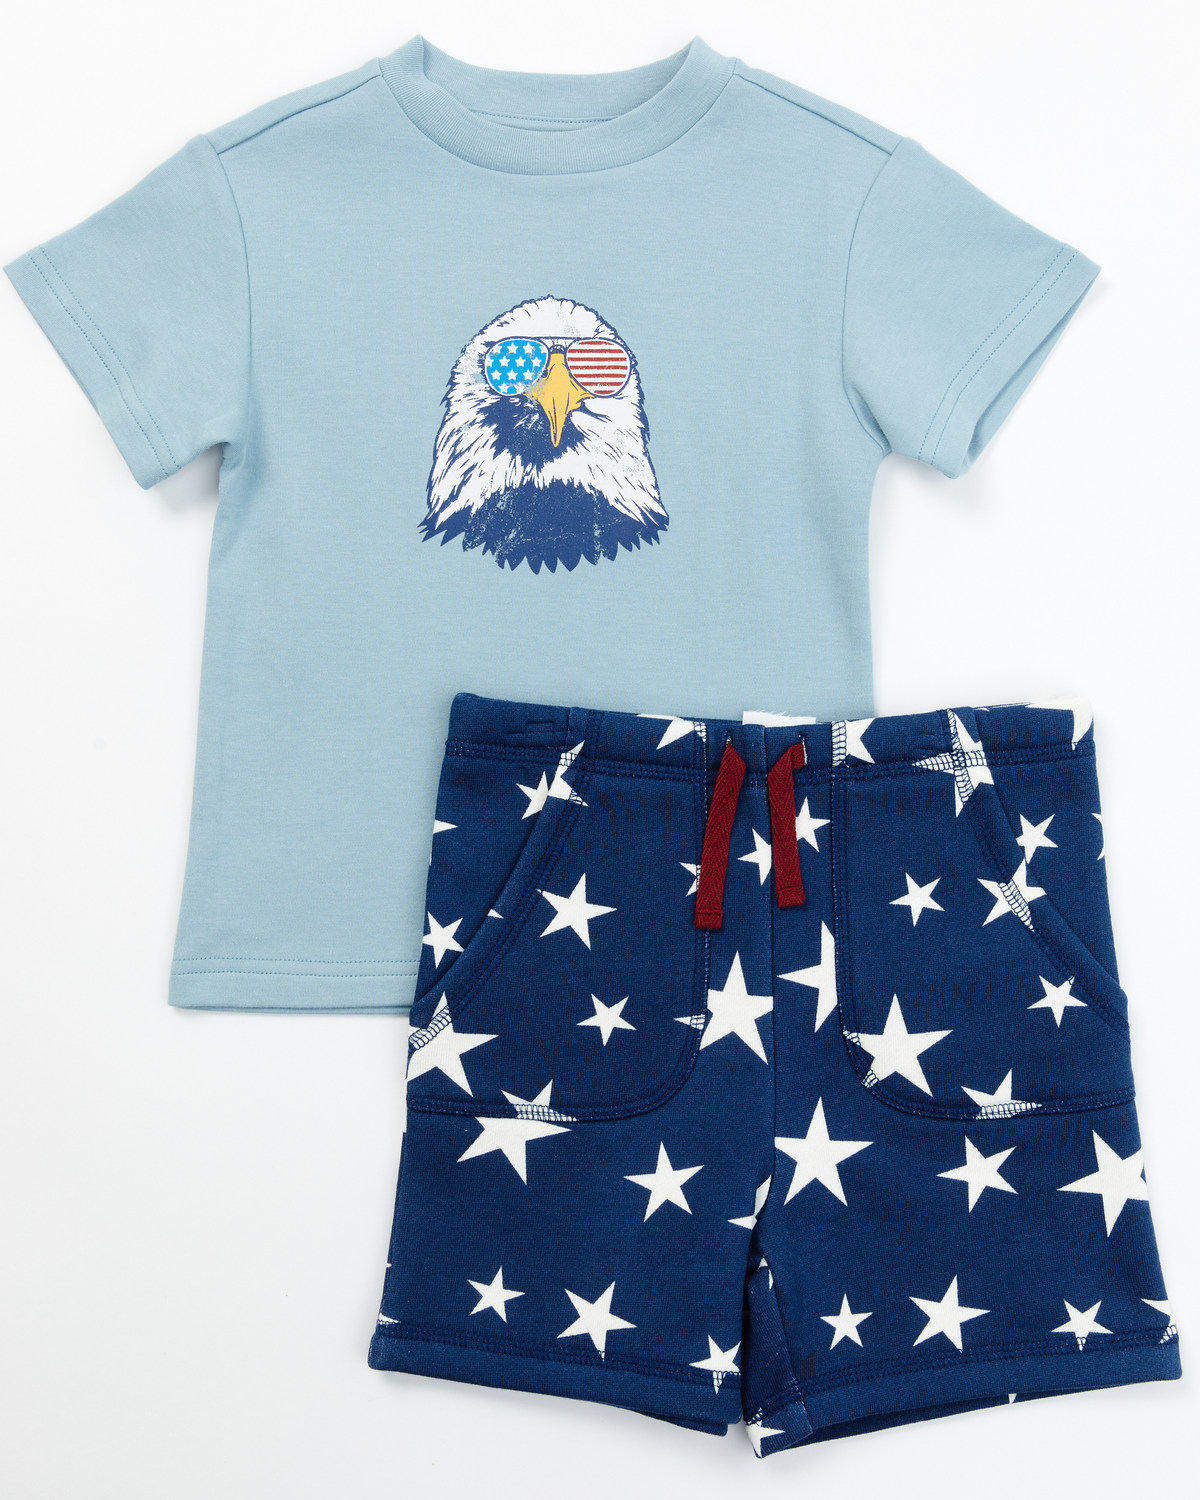 Cody James Toddler Boys' USA Shirt and Shorts - 2 Piece Set